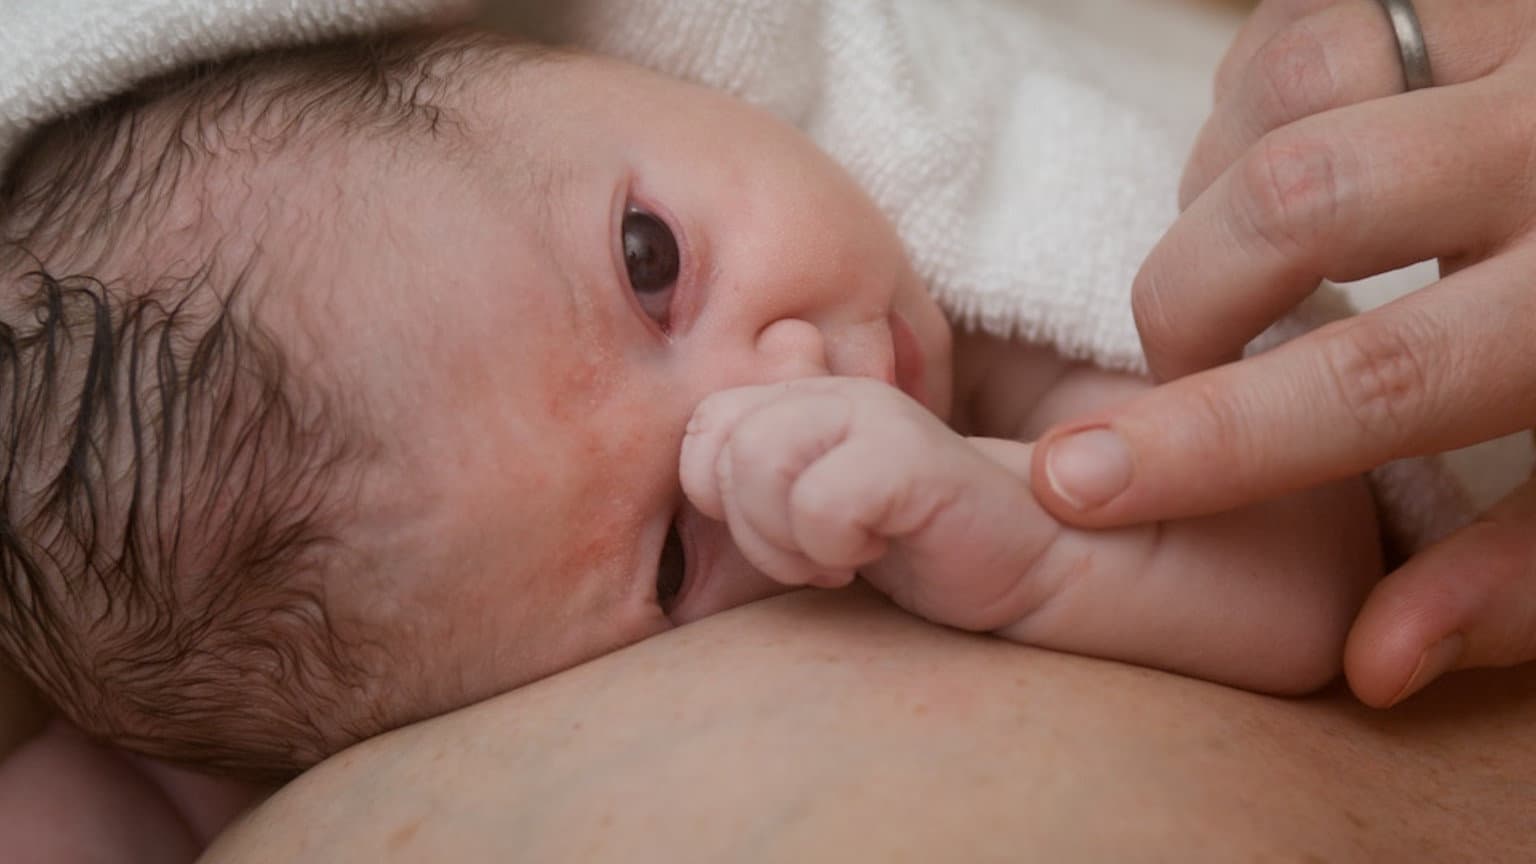 Legaler Kindsmord: Tötung von Neugeborenen und Säuglingen soll erlaubt werden